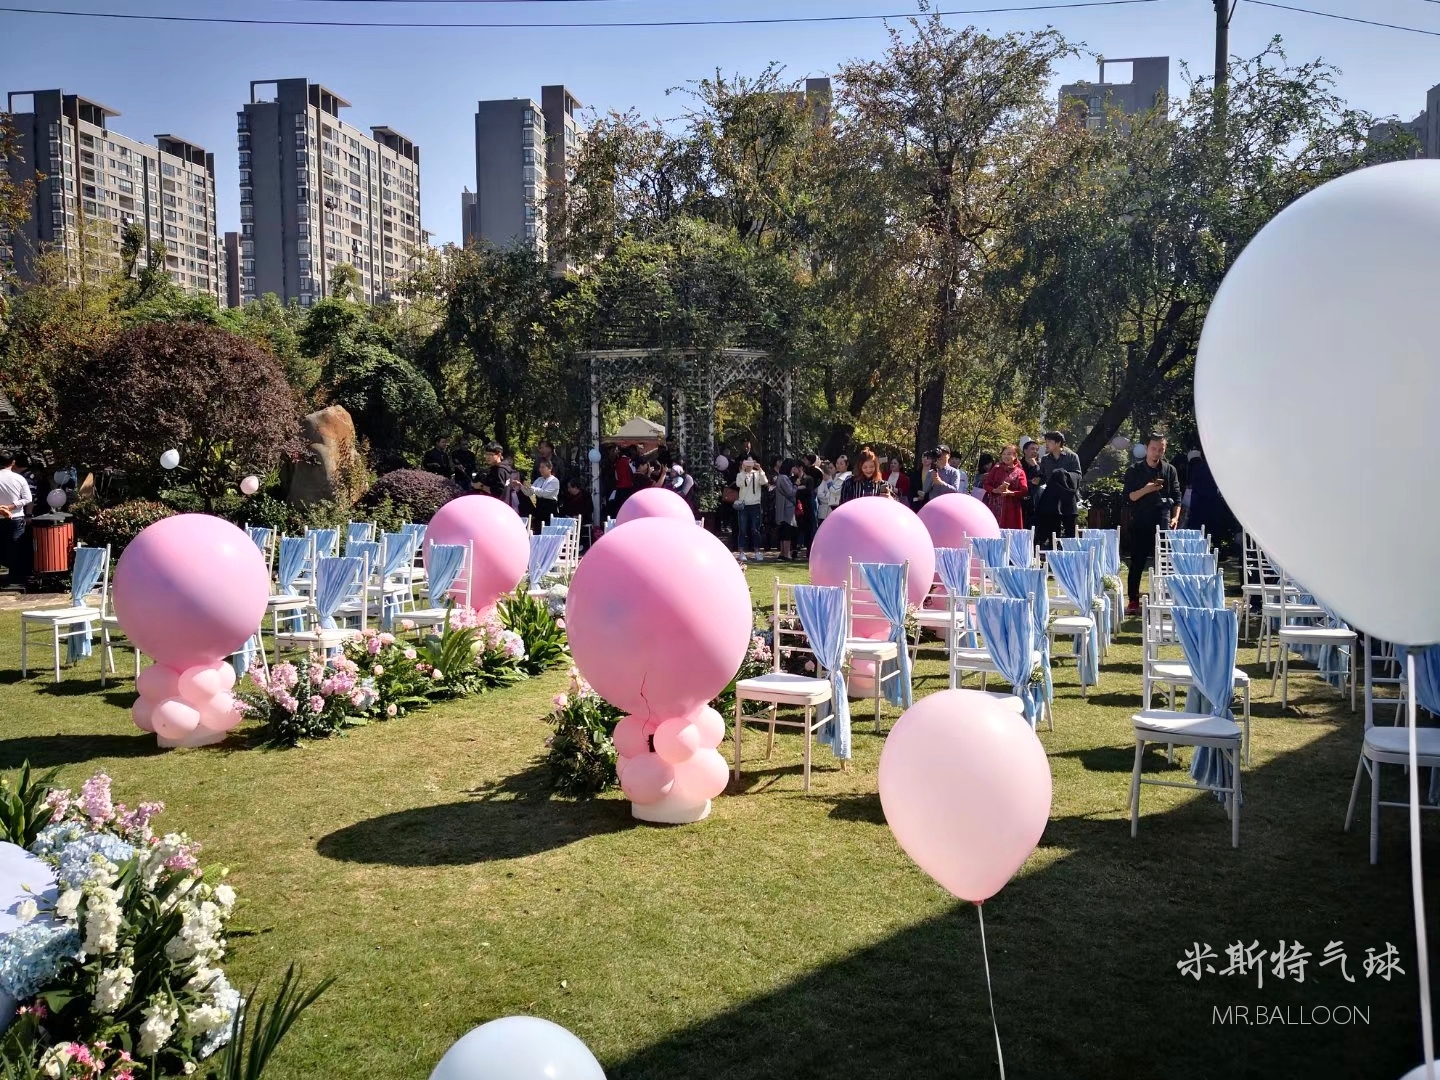 米斯特气球:株洲室外创意唯美婚礼气球布置案例分享